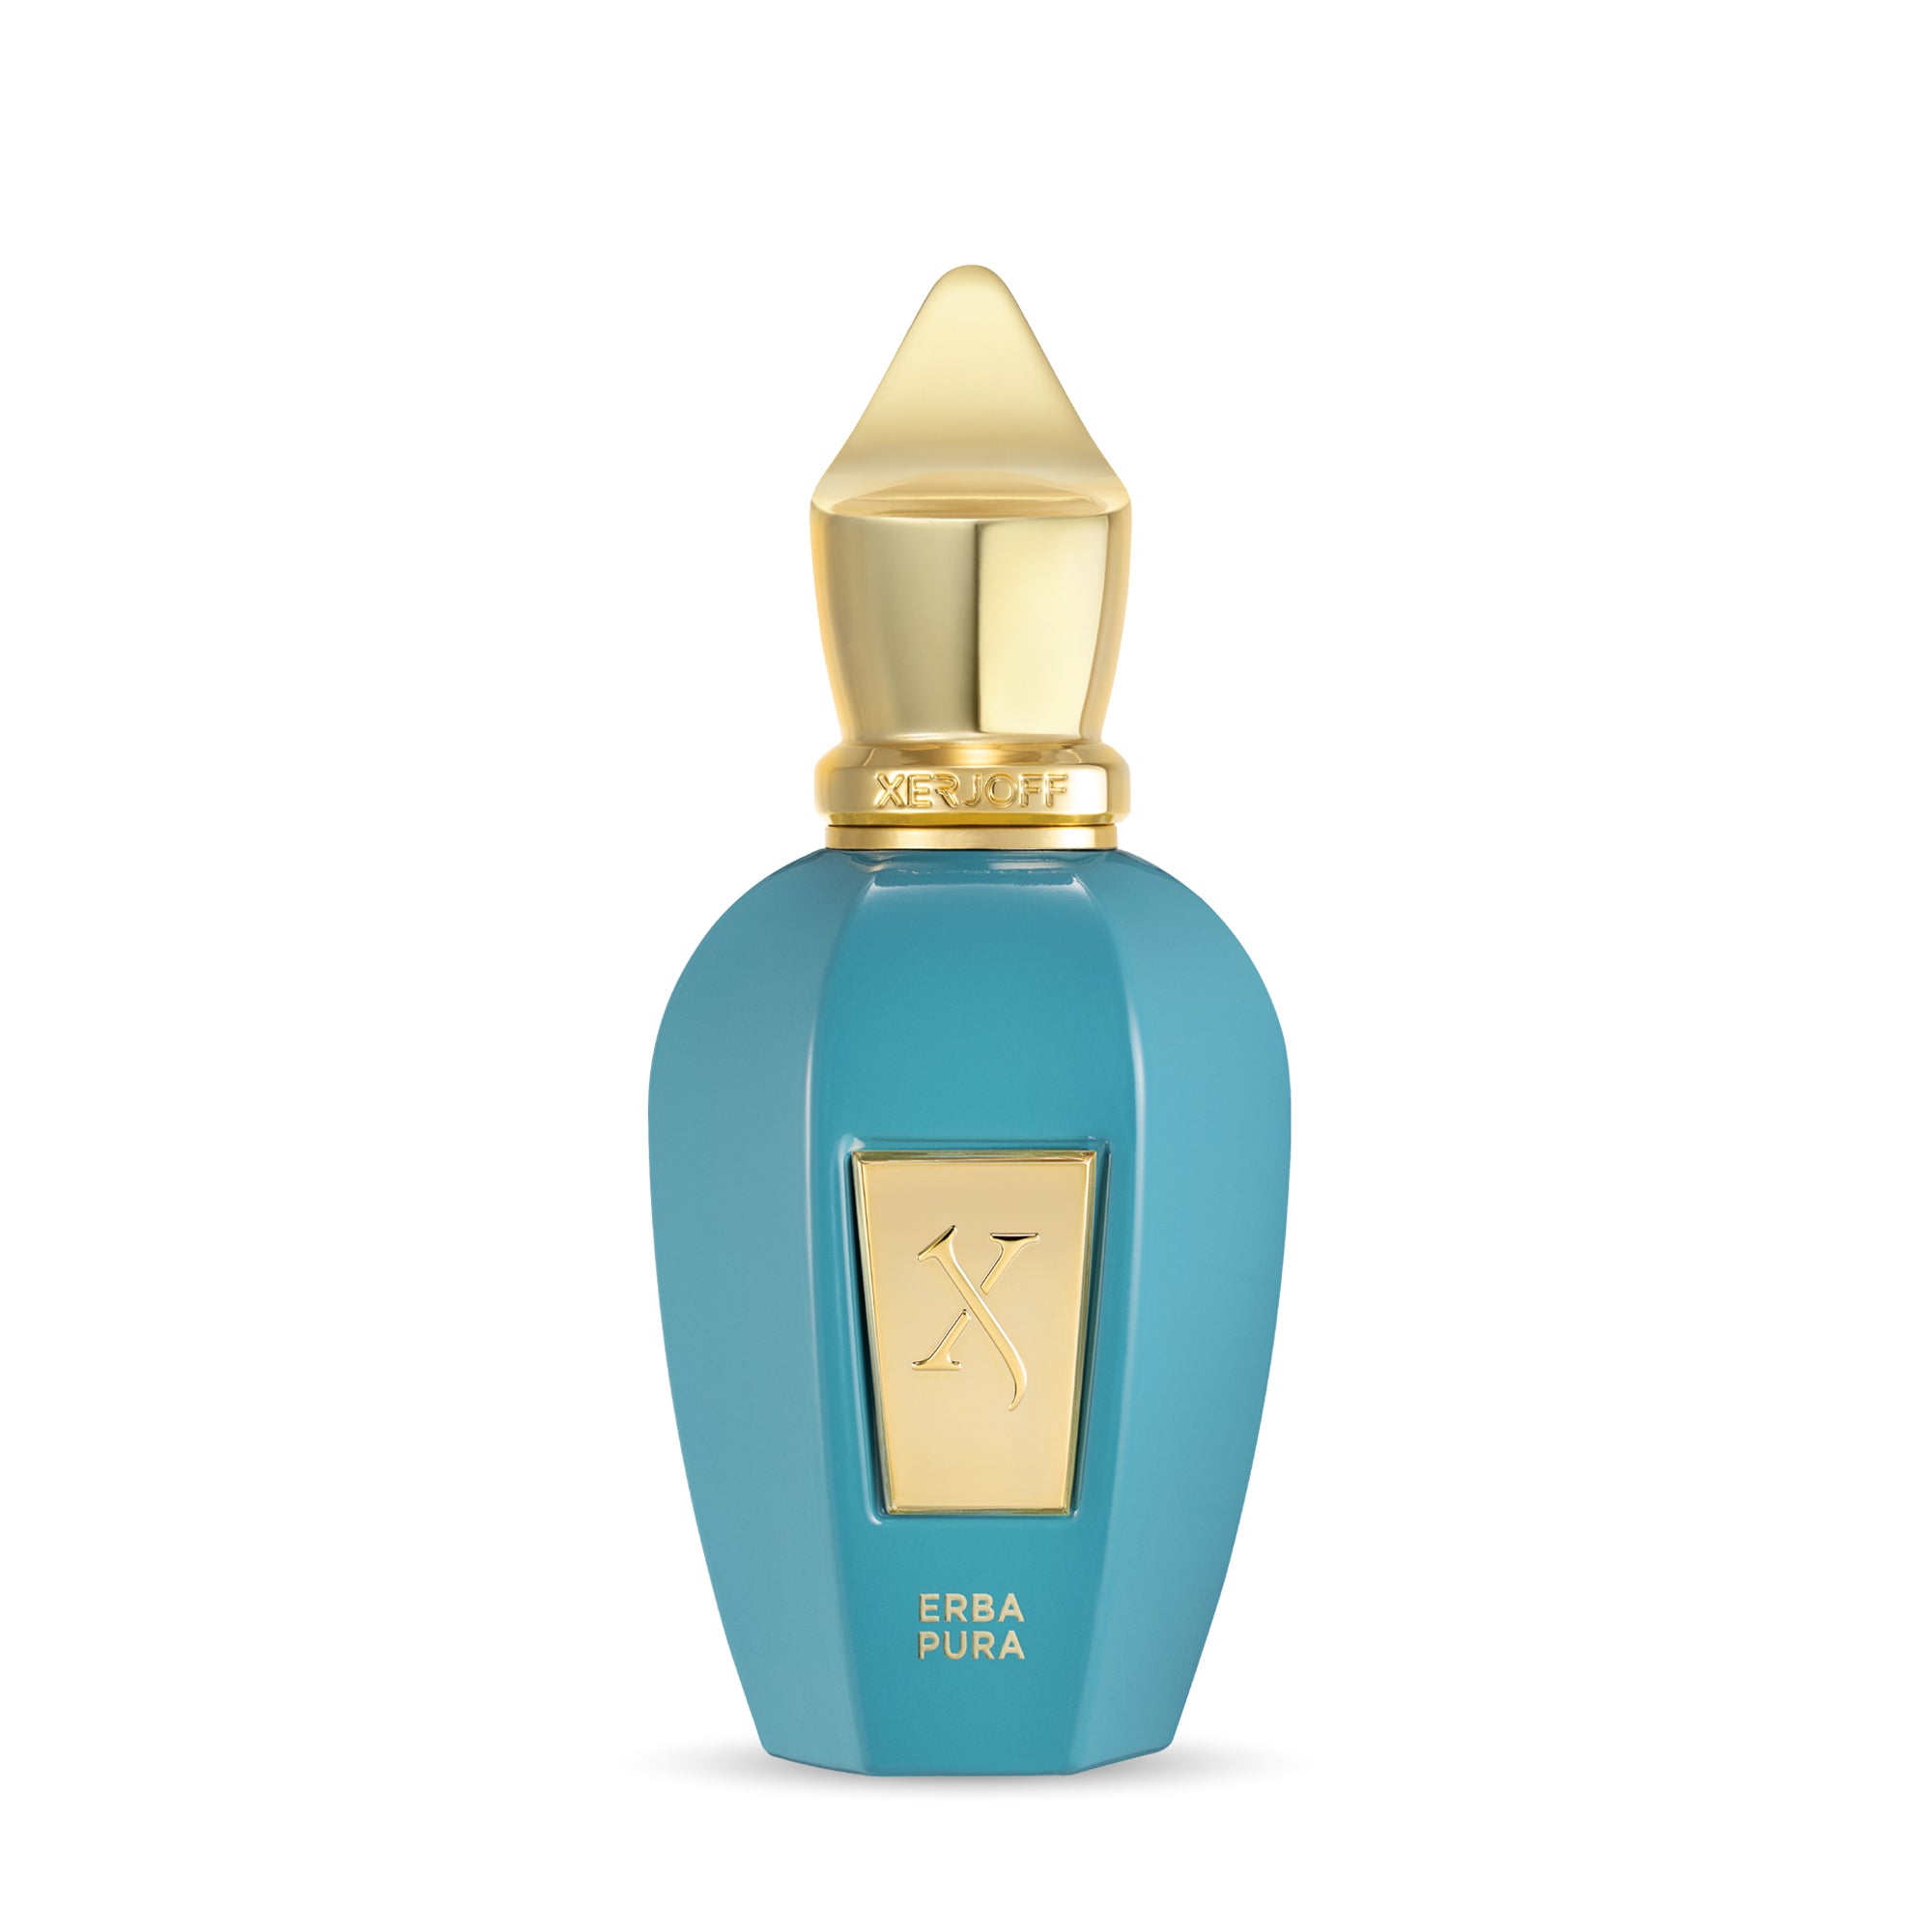 Shop Xerjoff - ERBA PURA Eau de Parfum | ZGO Perfumery